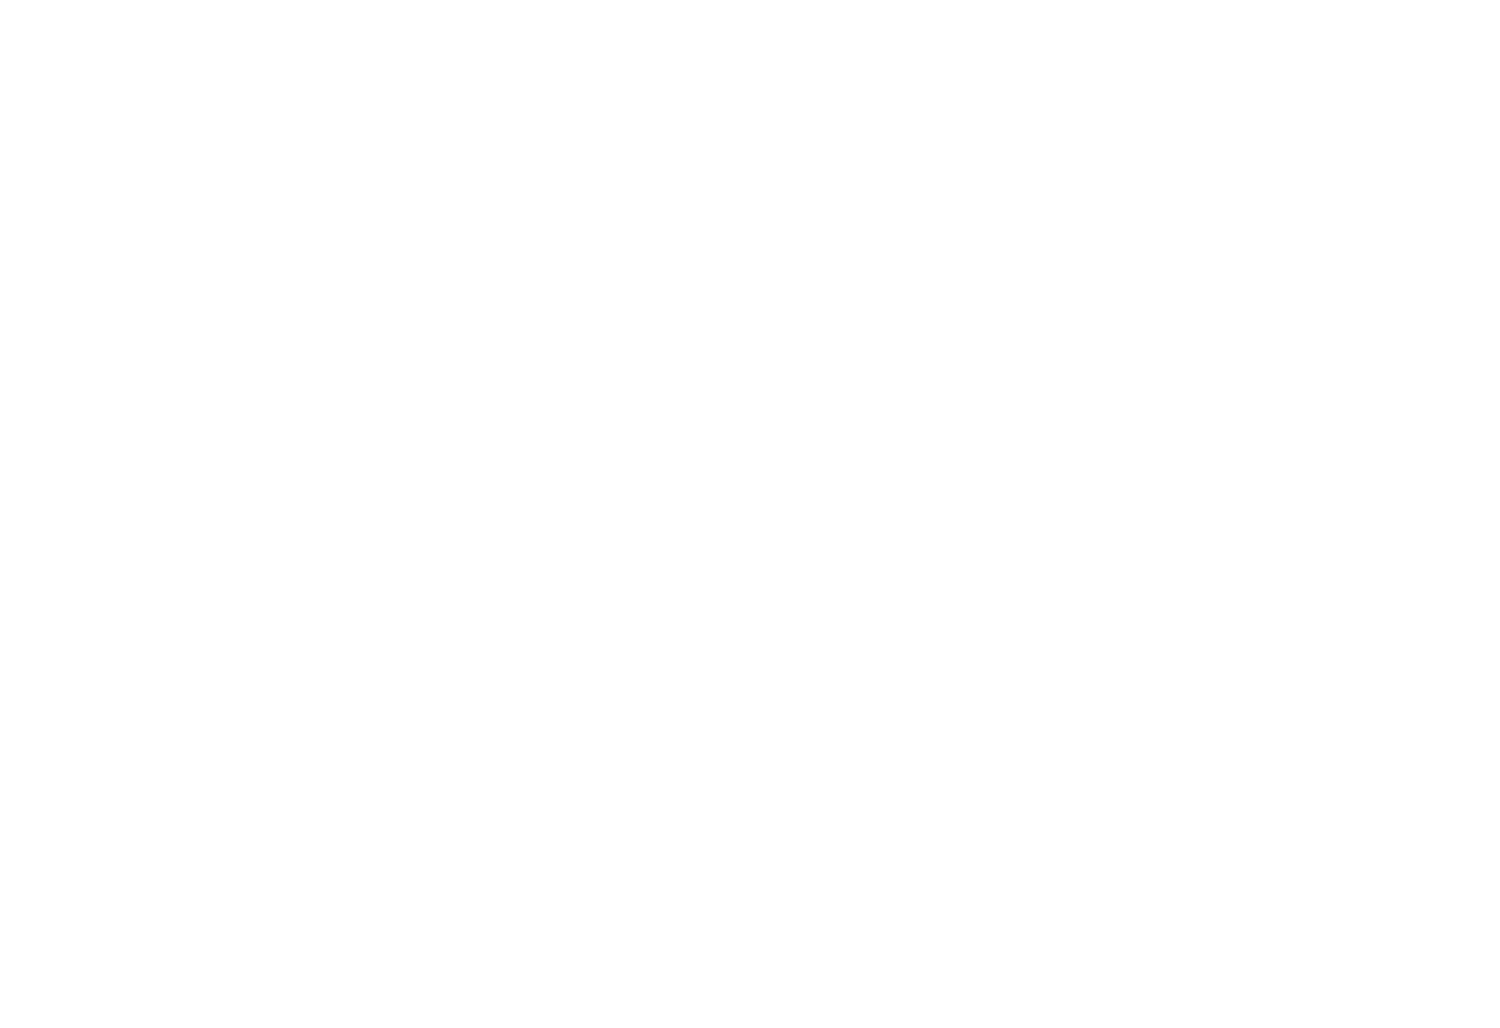 Motion DJs